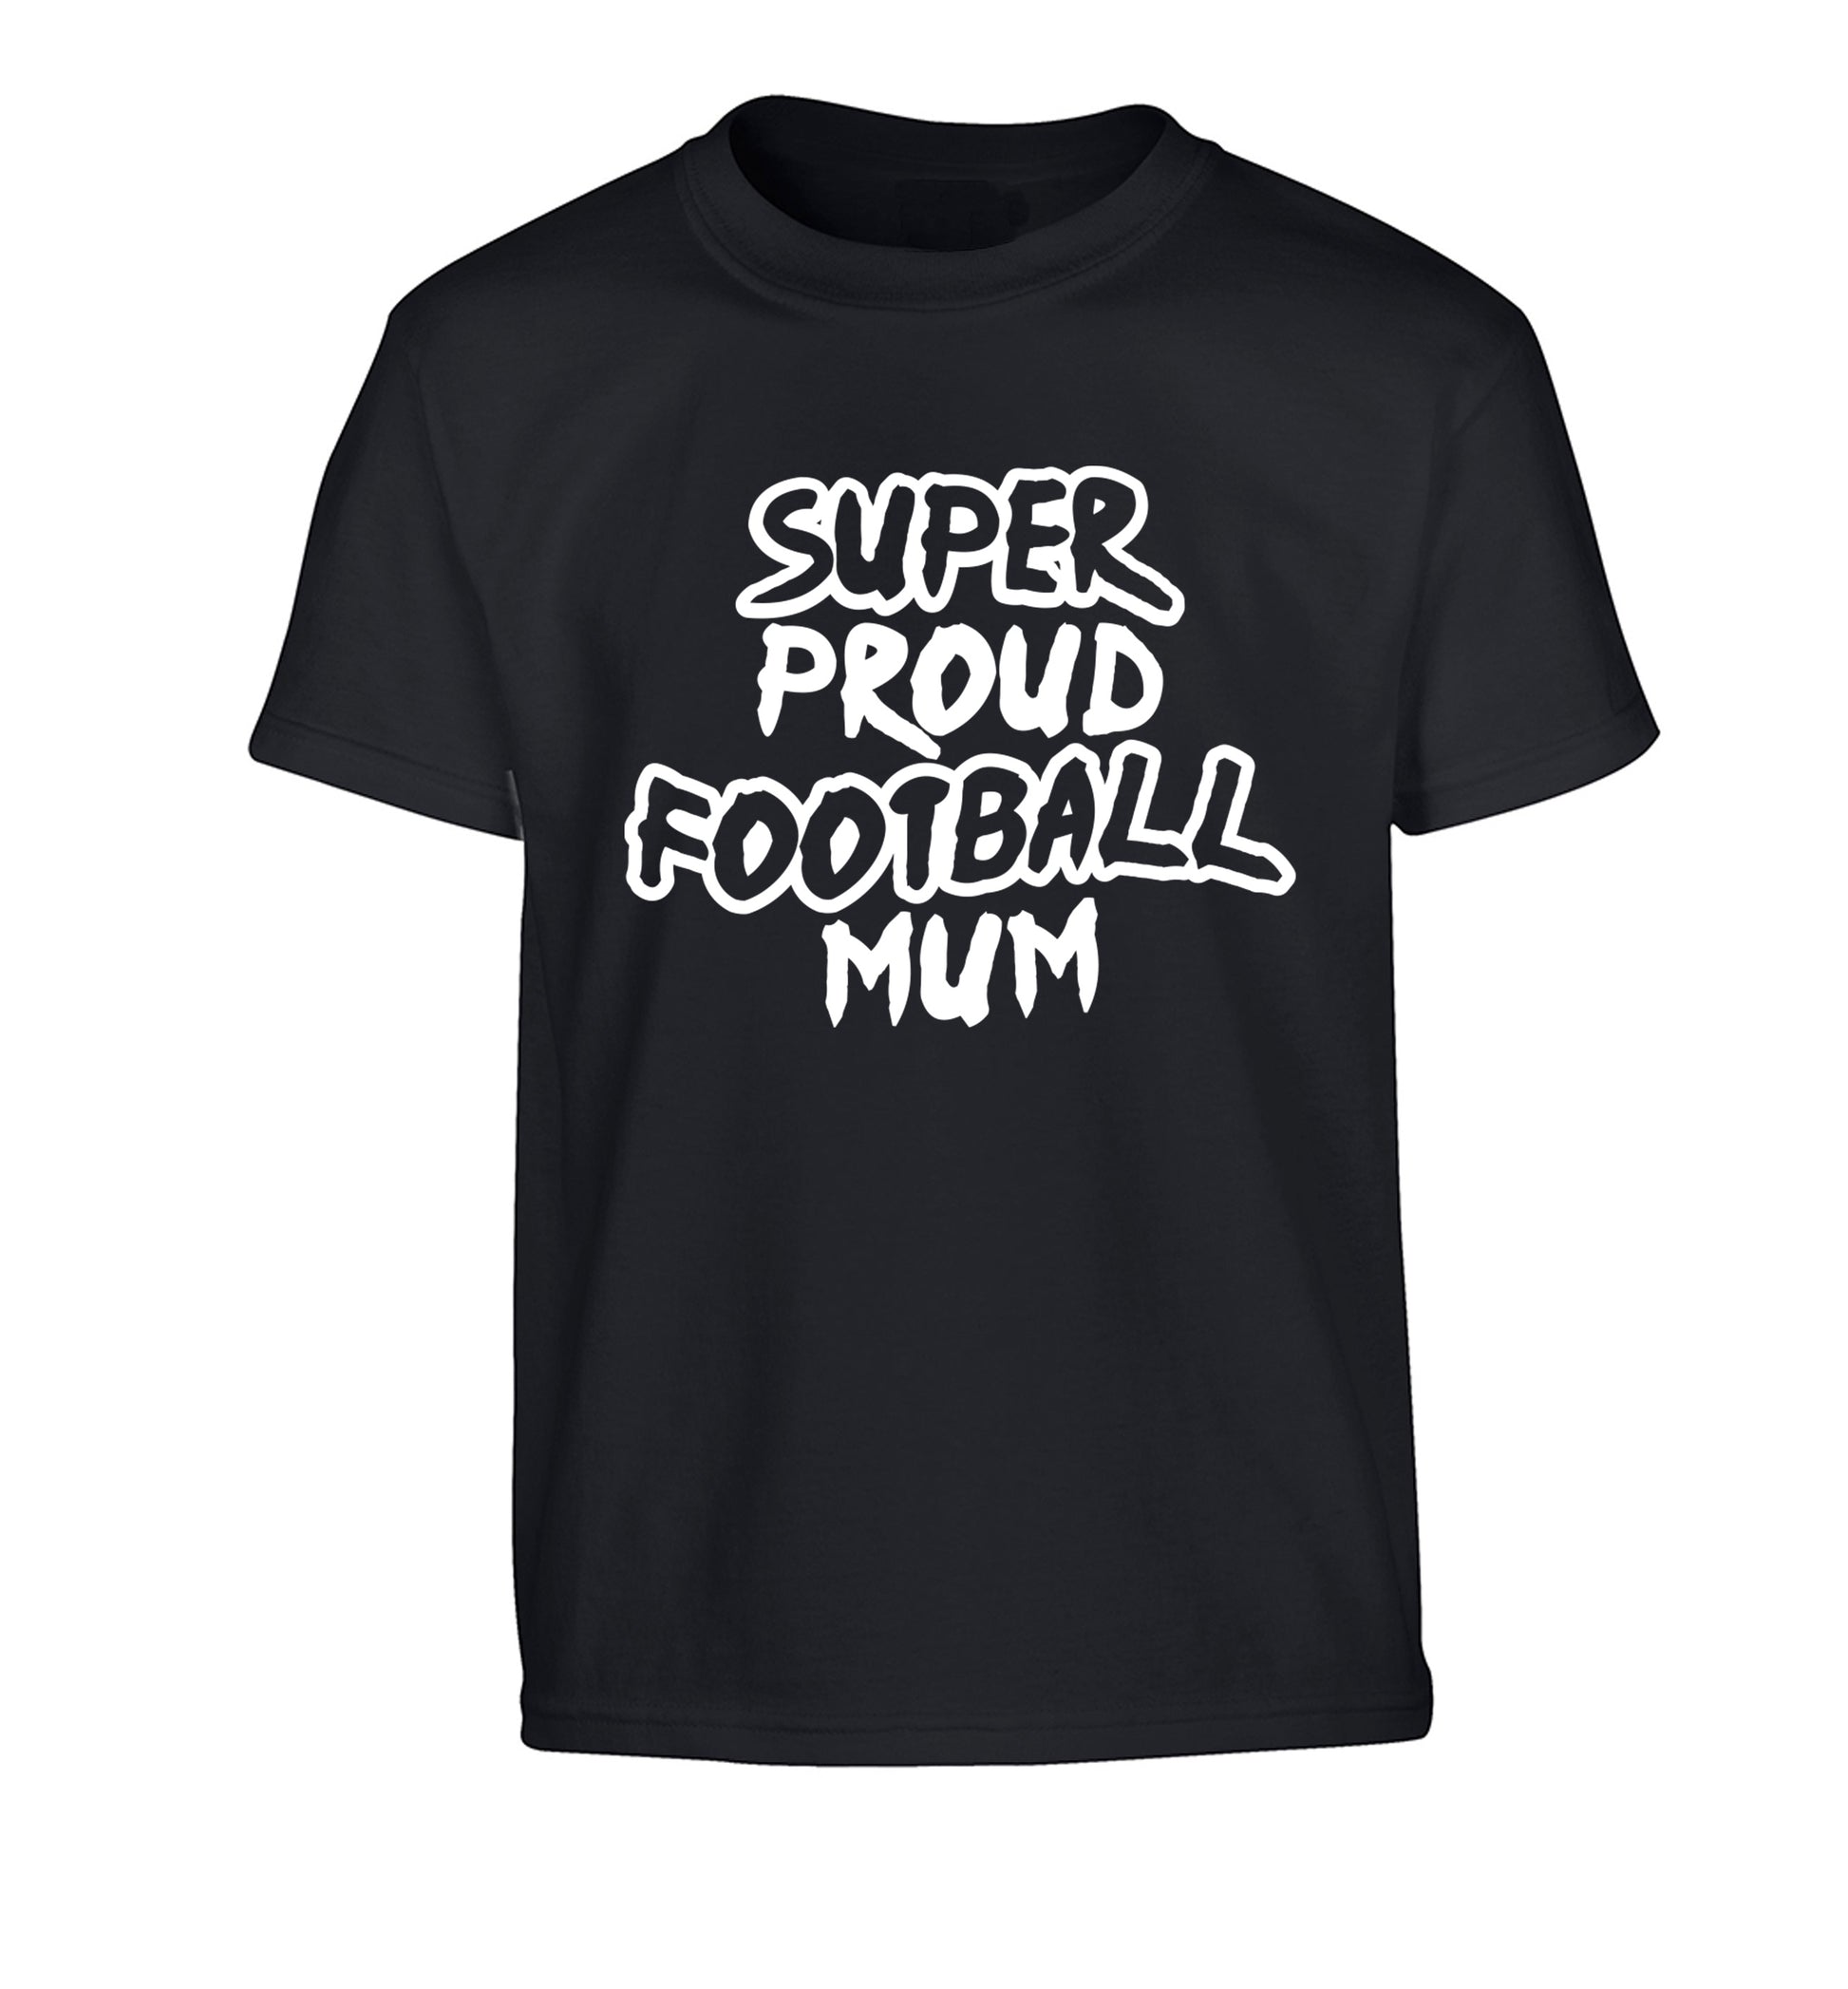 Super proud football mum Children's black Tshirt 12-14 Years